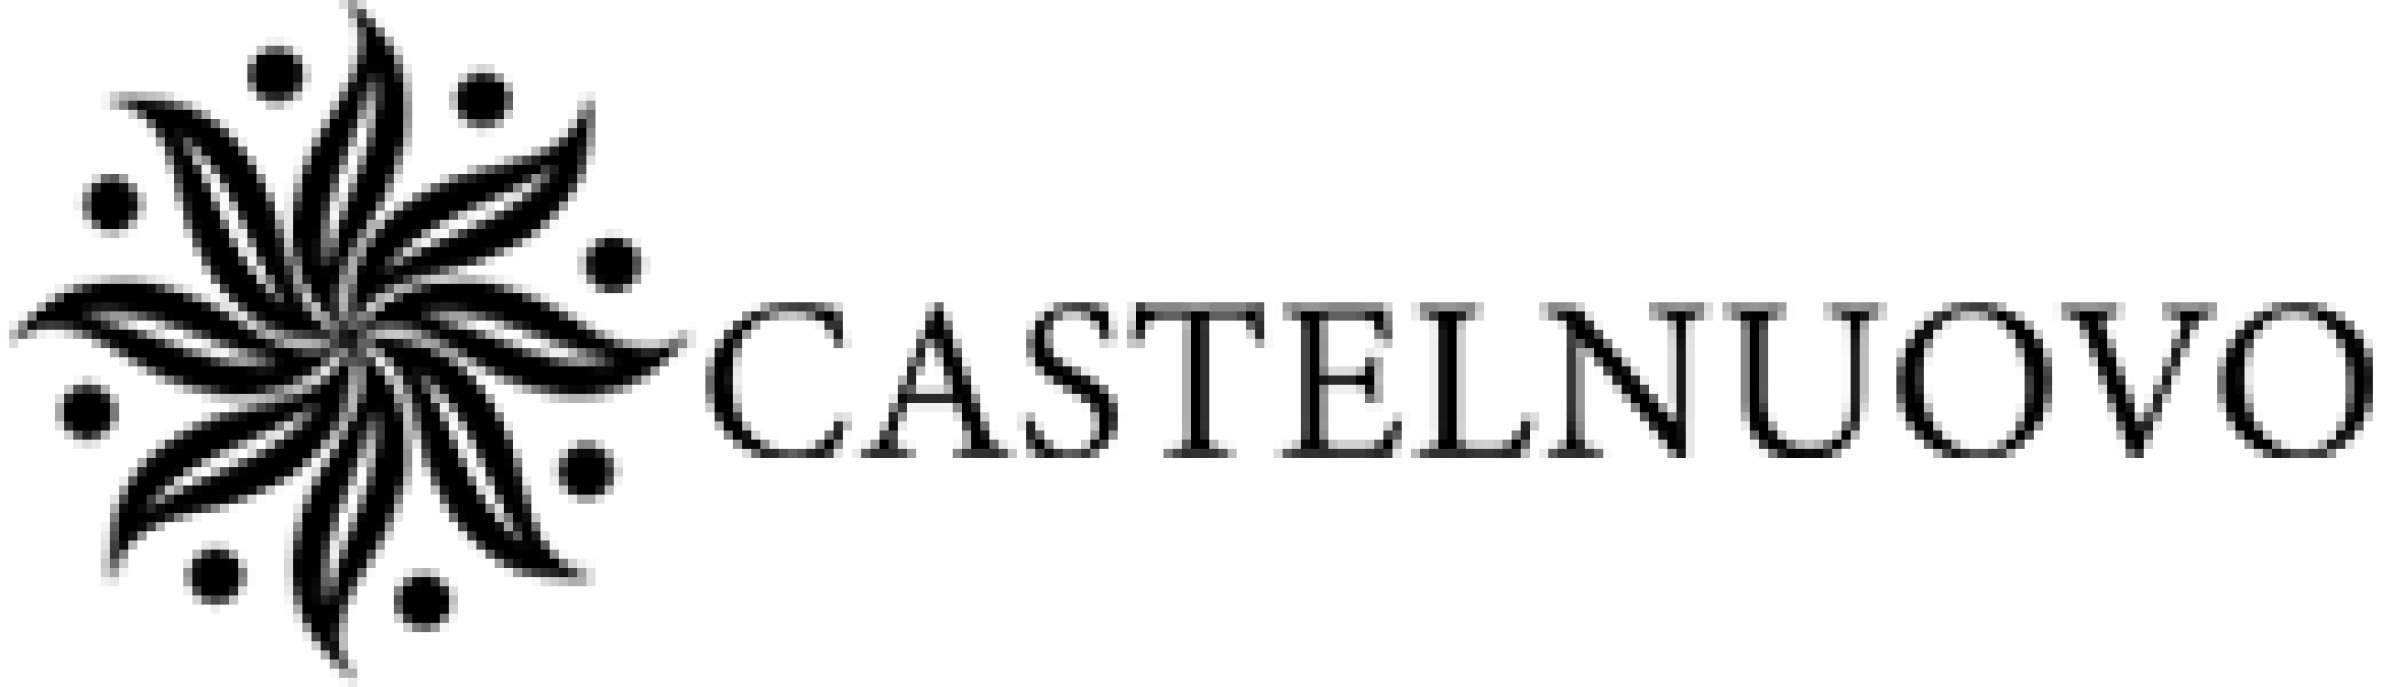 Logo Castelnuovo - Cliente Auditecnic